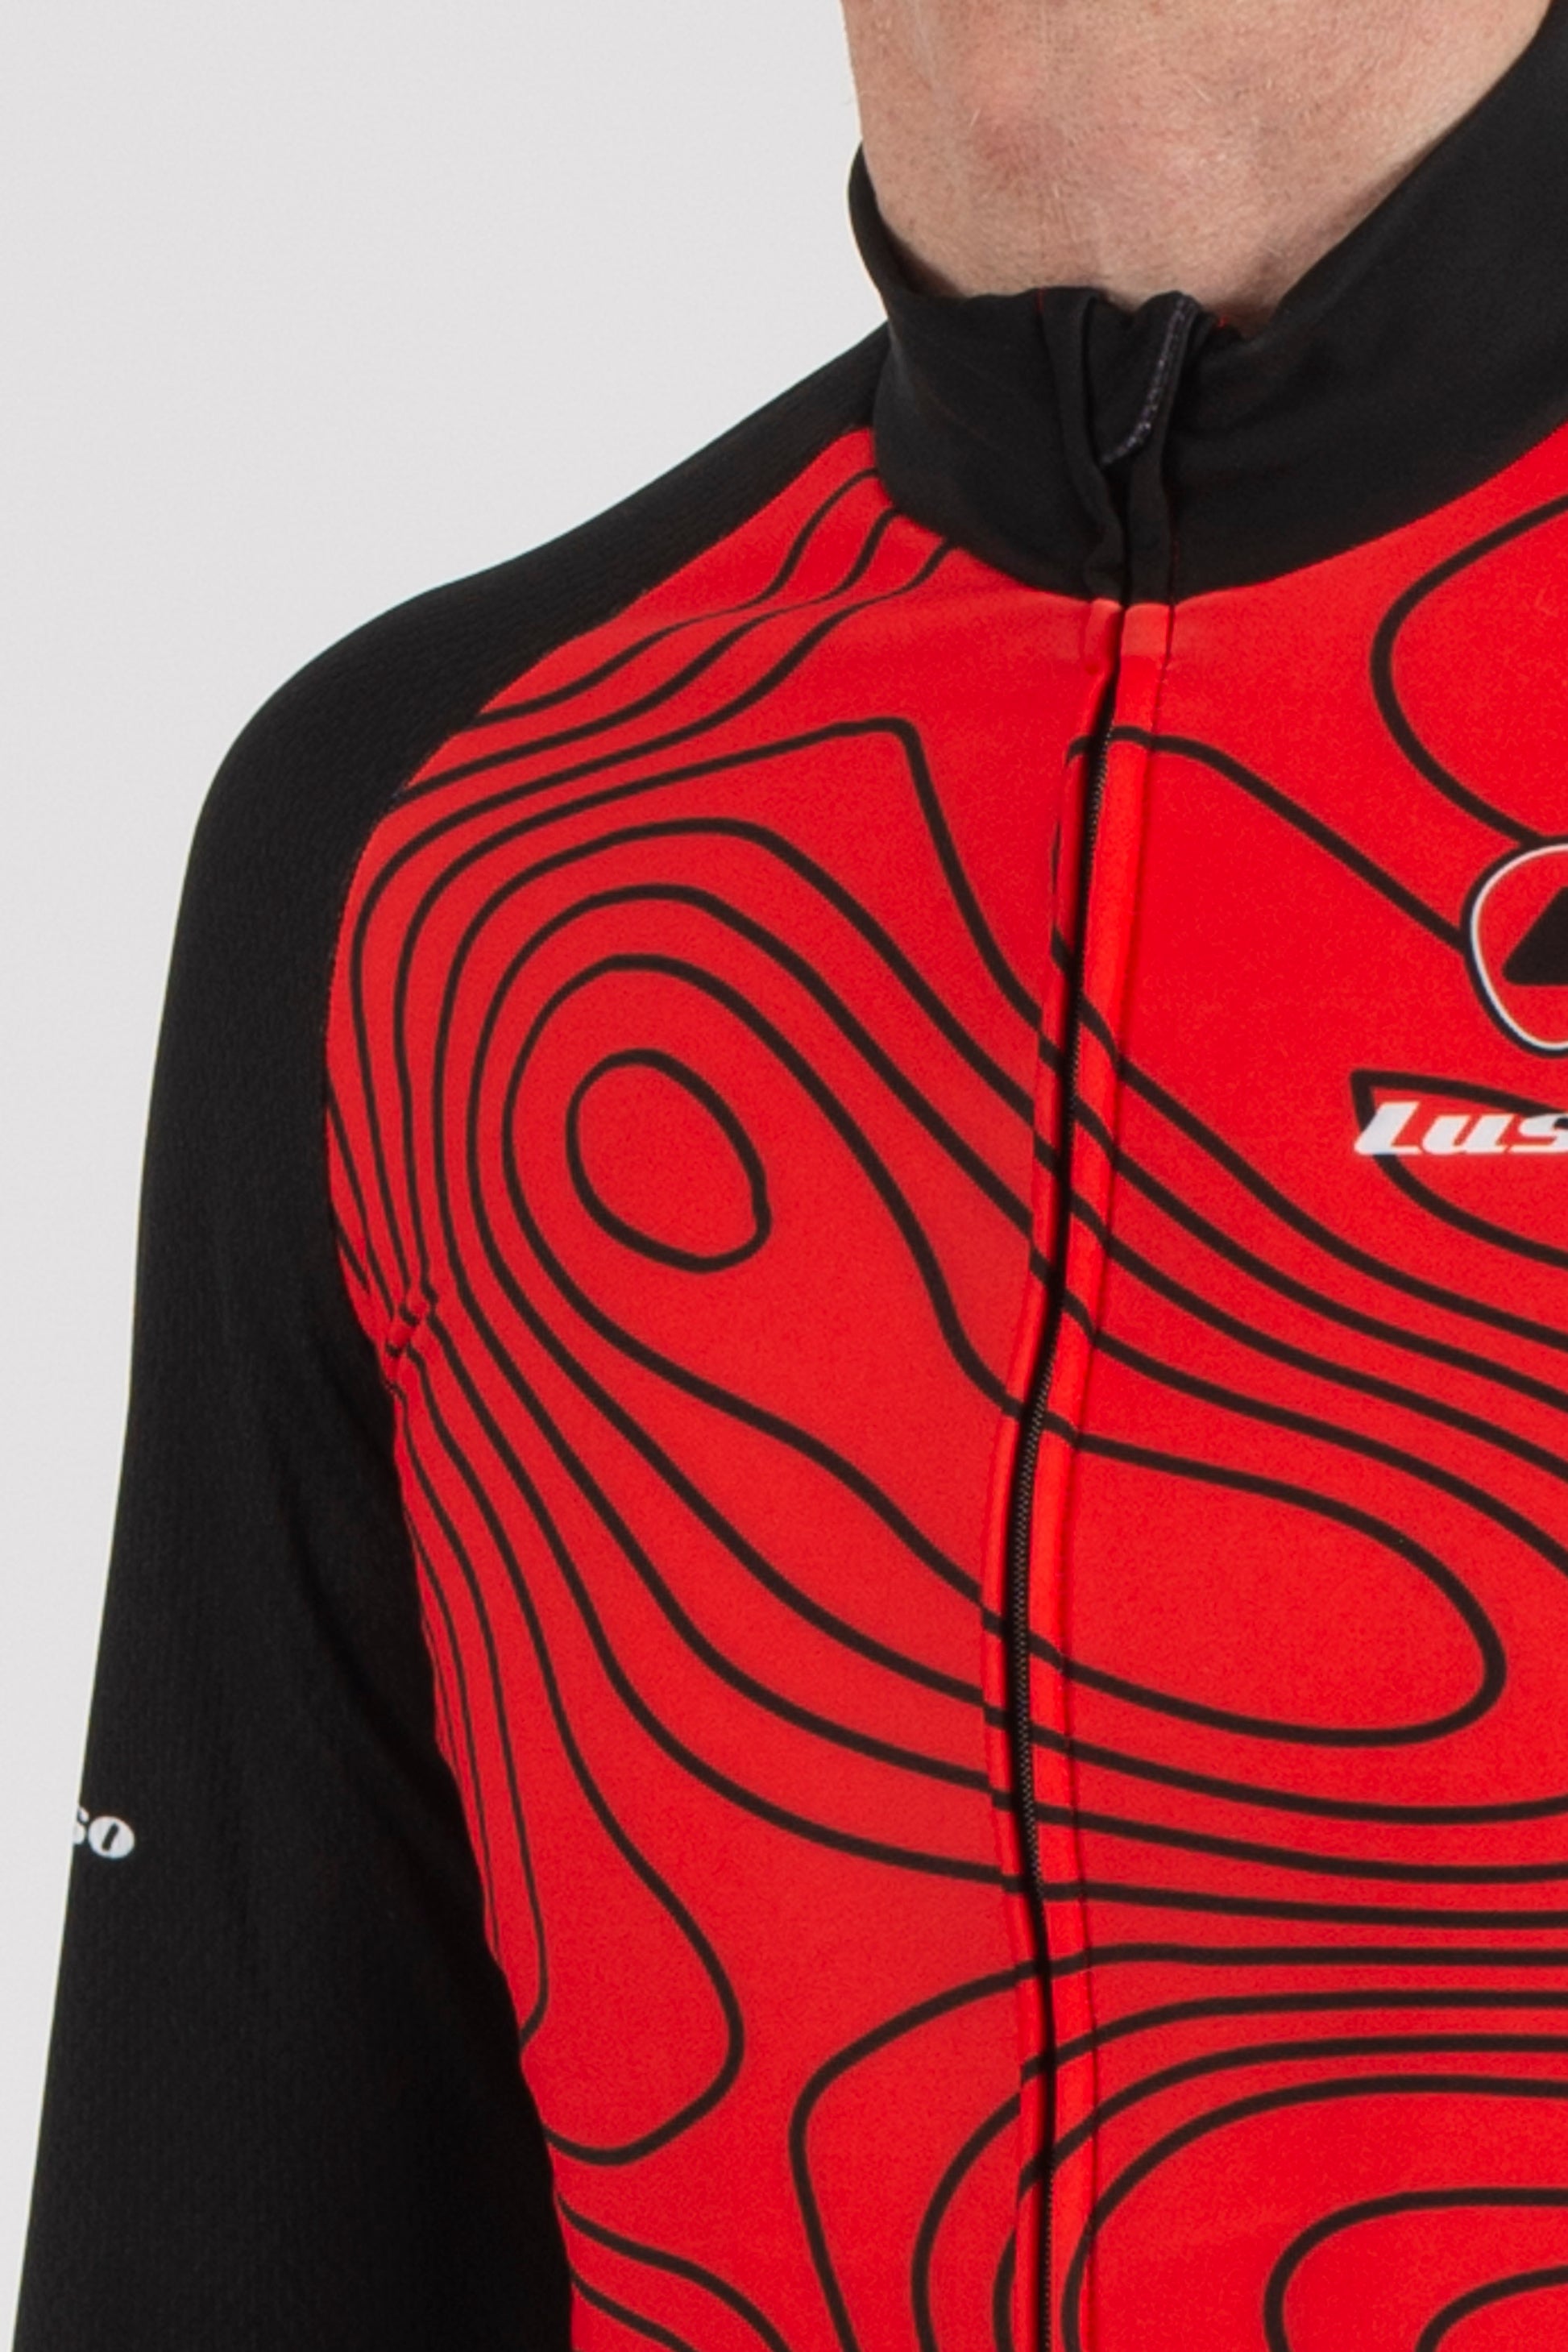 Terrain Red Long Sleeve Jersey - Lusso Cycle Wear